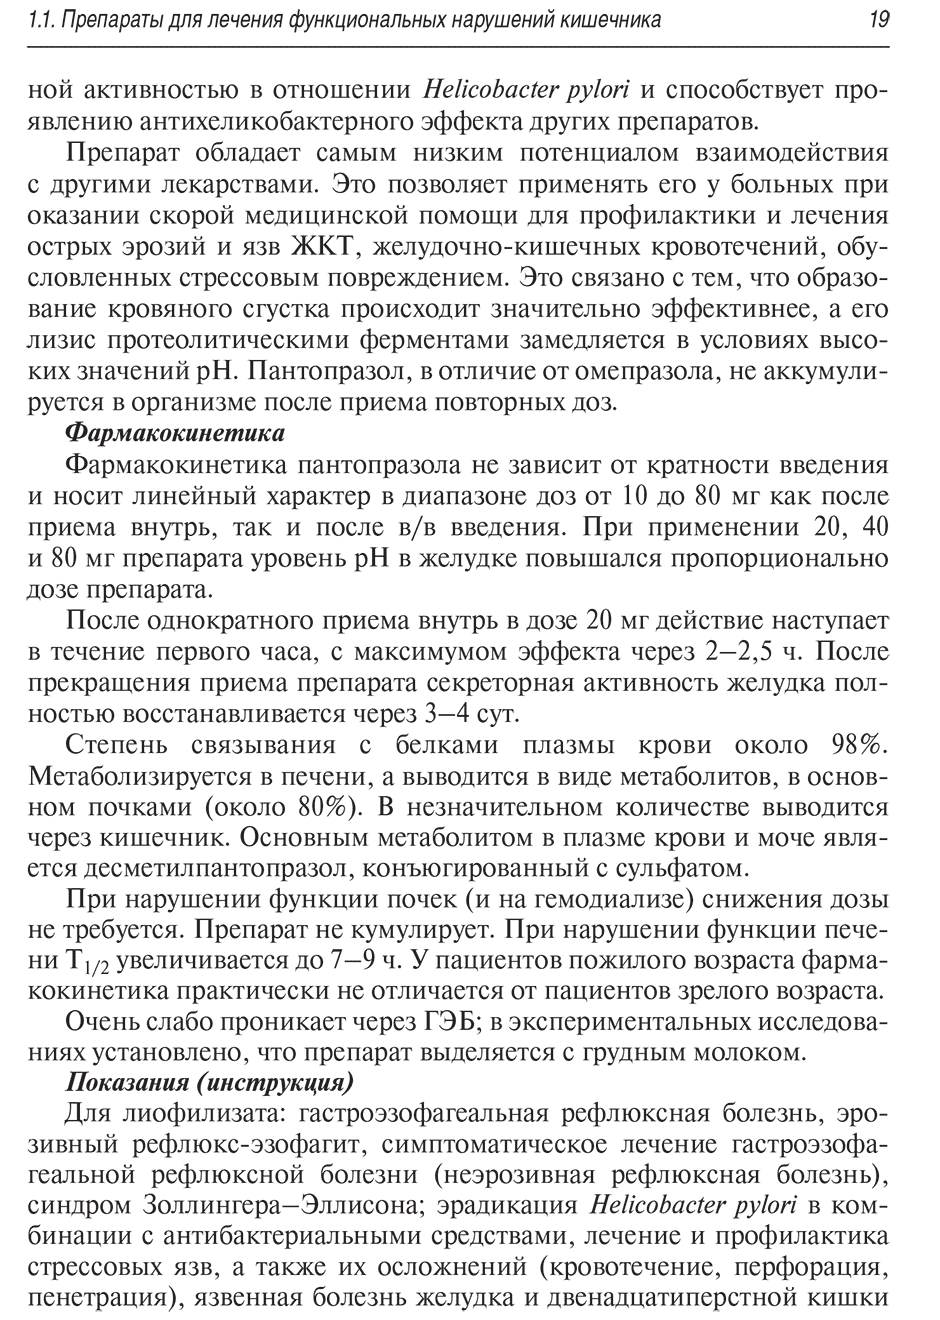 Пример страницы из книги "Лекарства при оказании скорой медицинской помощи: руководство для врачей и фельдшеров" - Тараканов А. В.